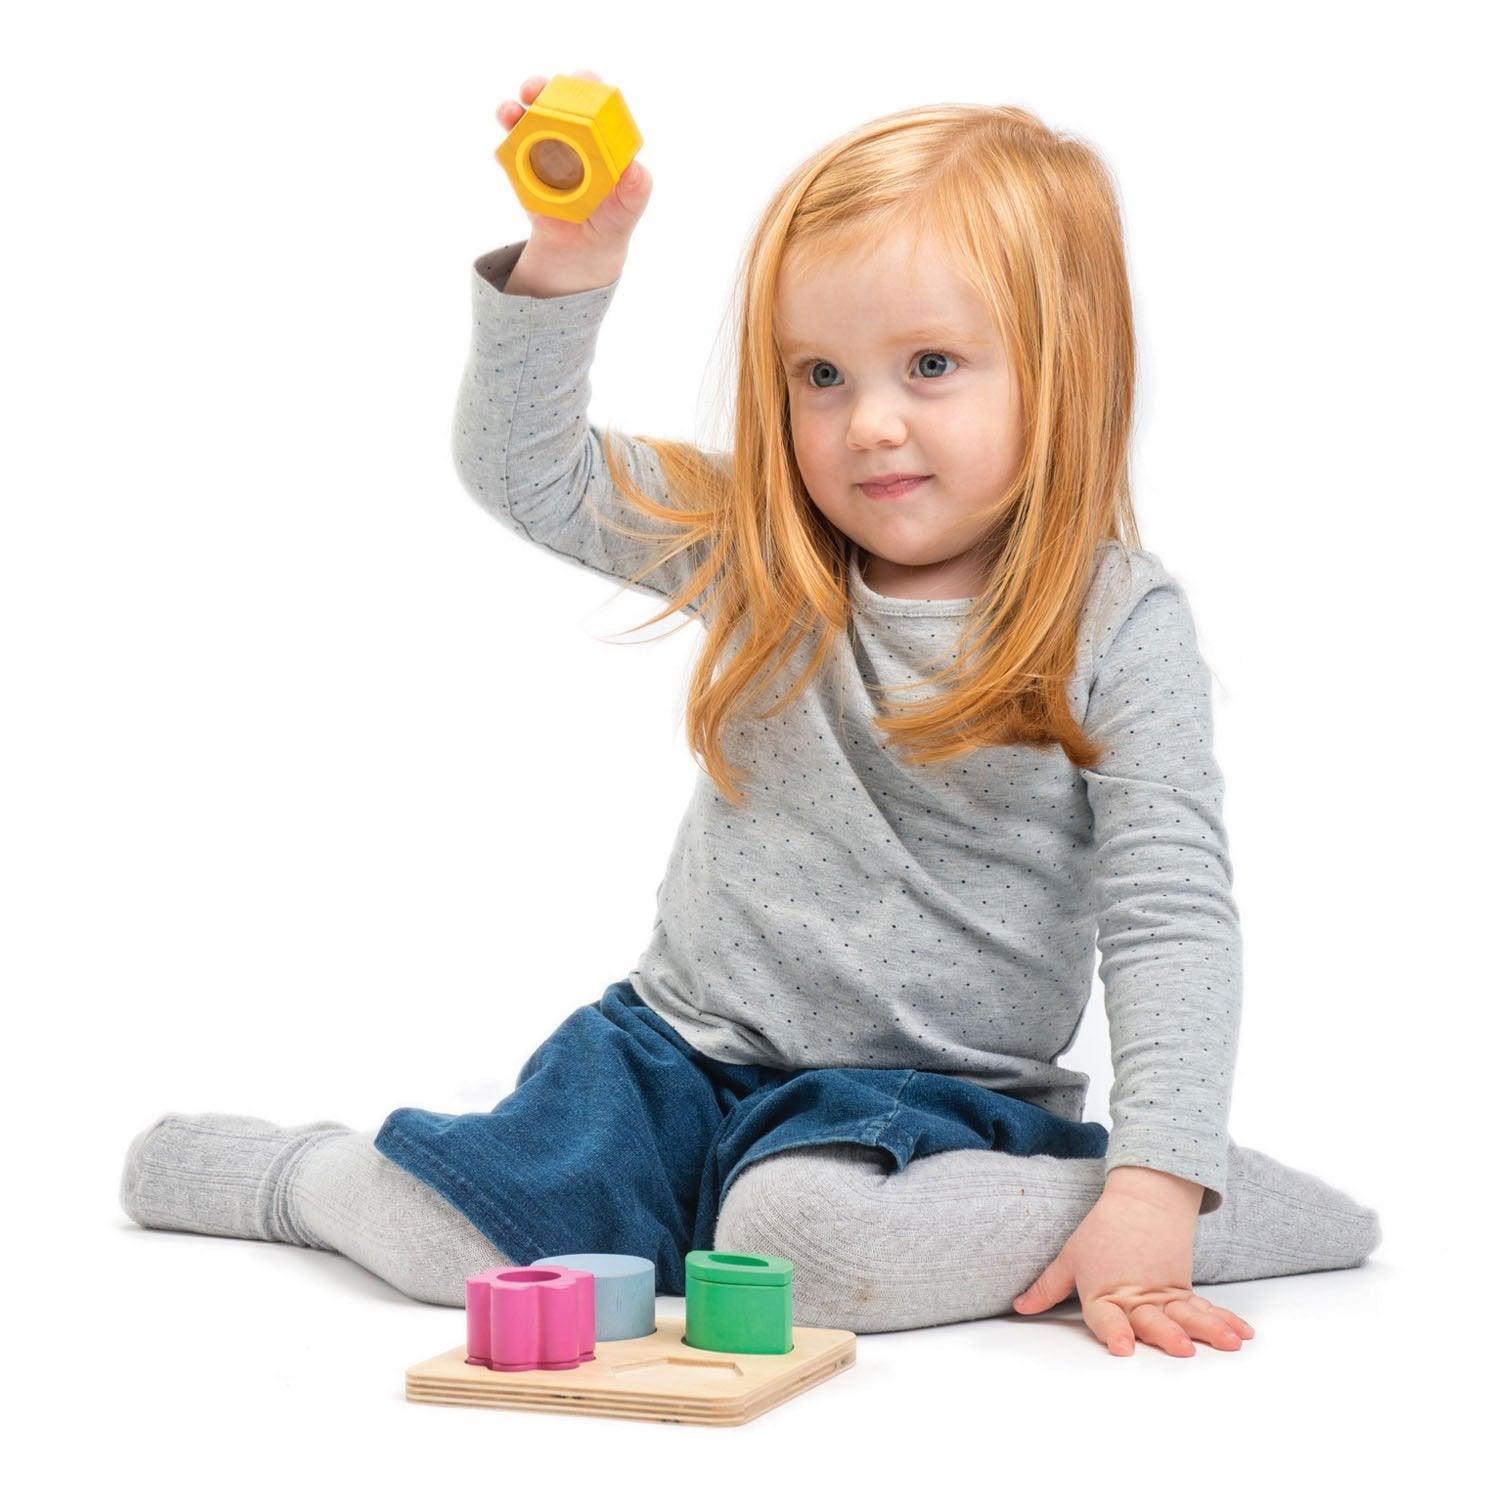 Tender Leaf Toys: optyczna zabawka sensoryczna Visual Sensory Tray - Noski Noski